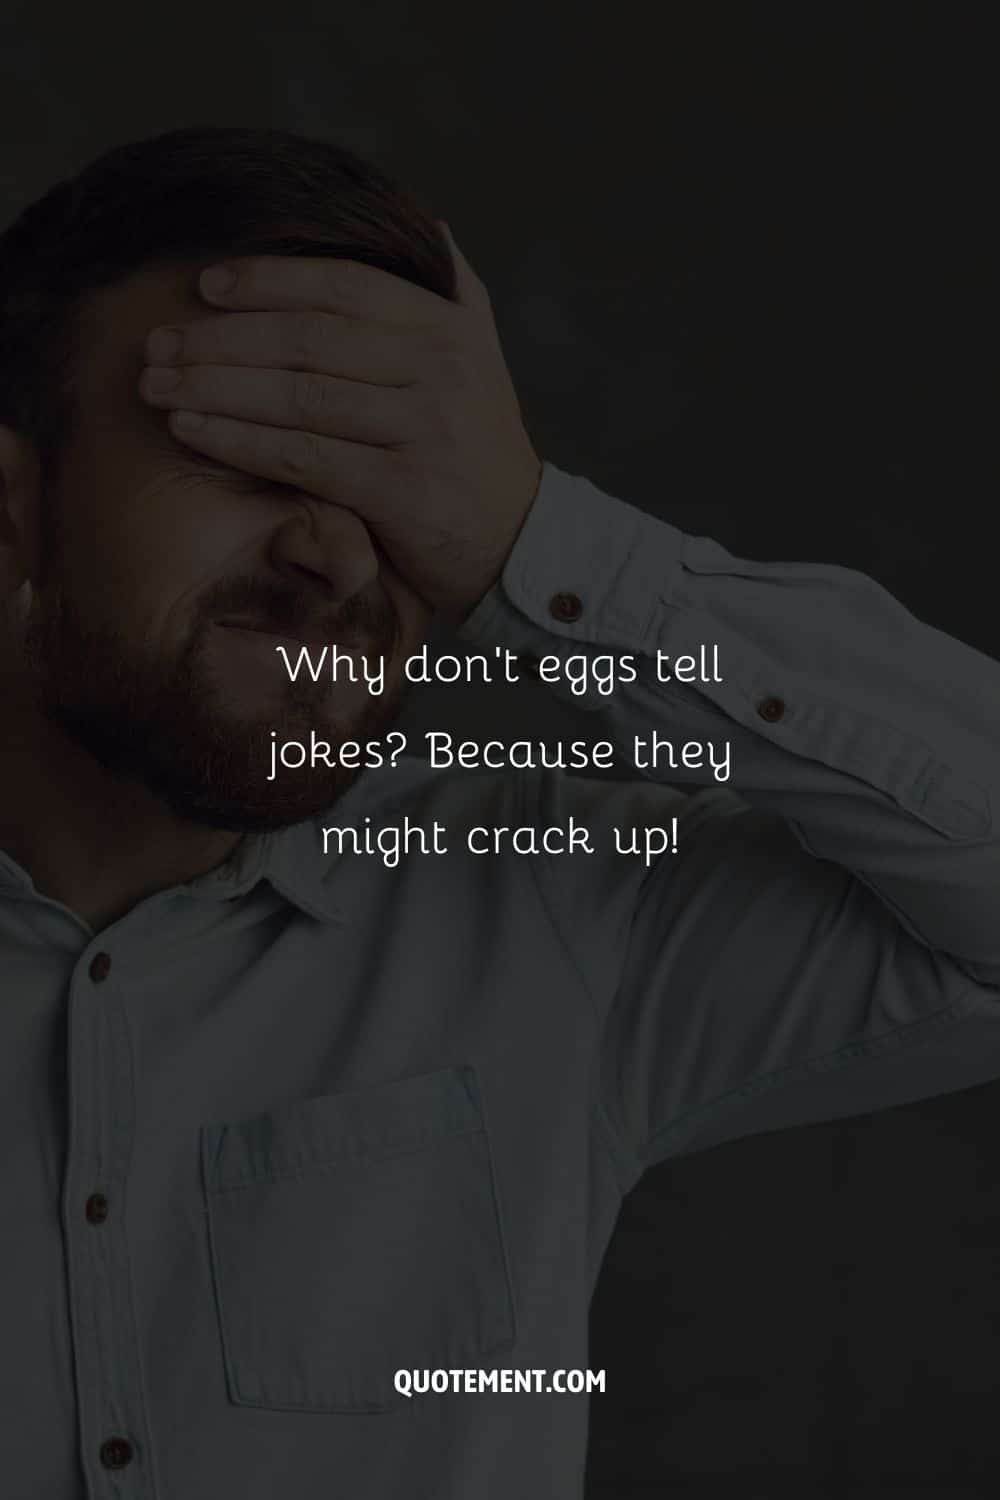 ¿Por qué los huevos no cuentan chistes? ¡Porque podrían partirse de risa!